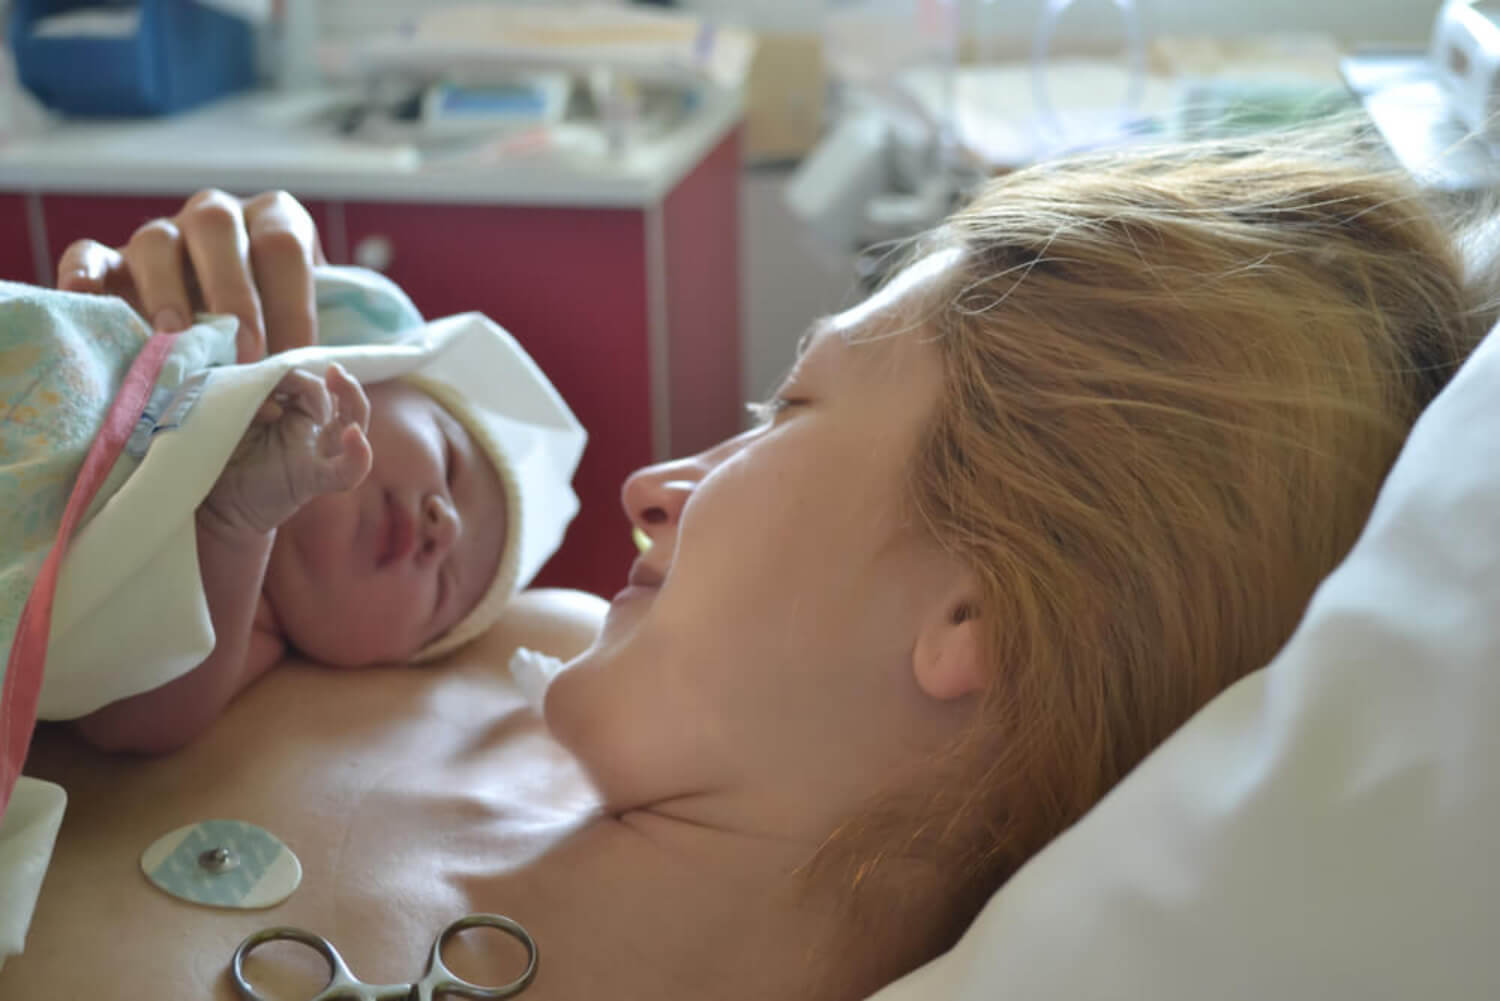 Madre con su bebé recién nacido en brazos tras sufrir sepsis neonatal.